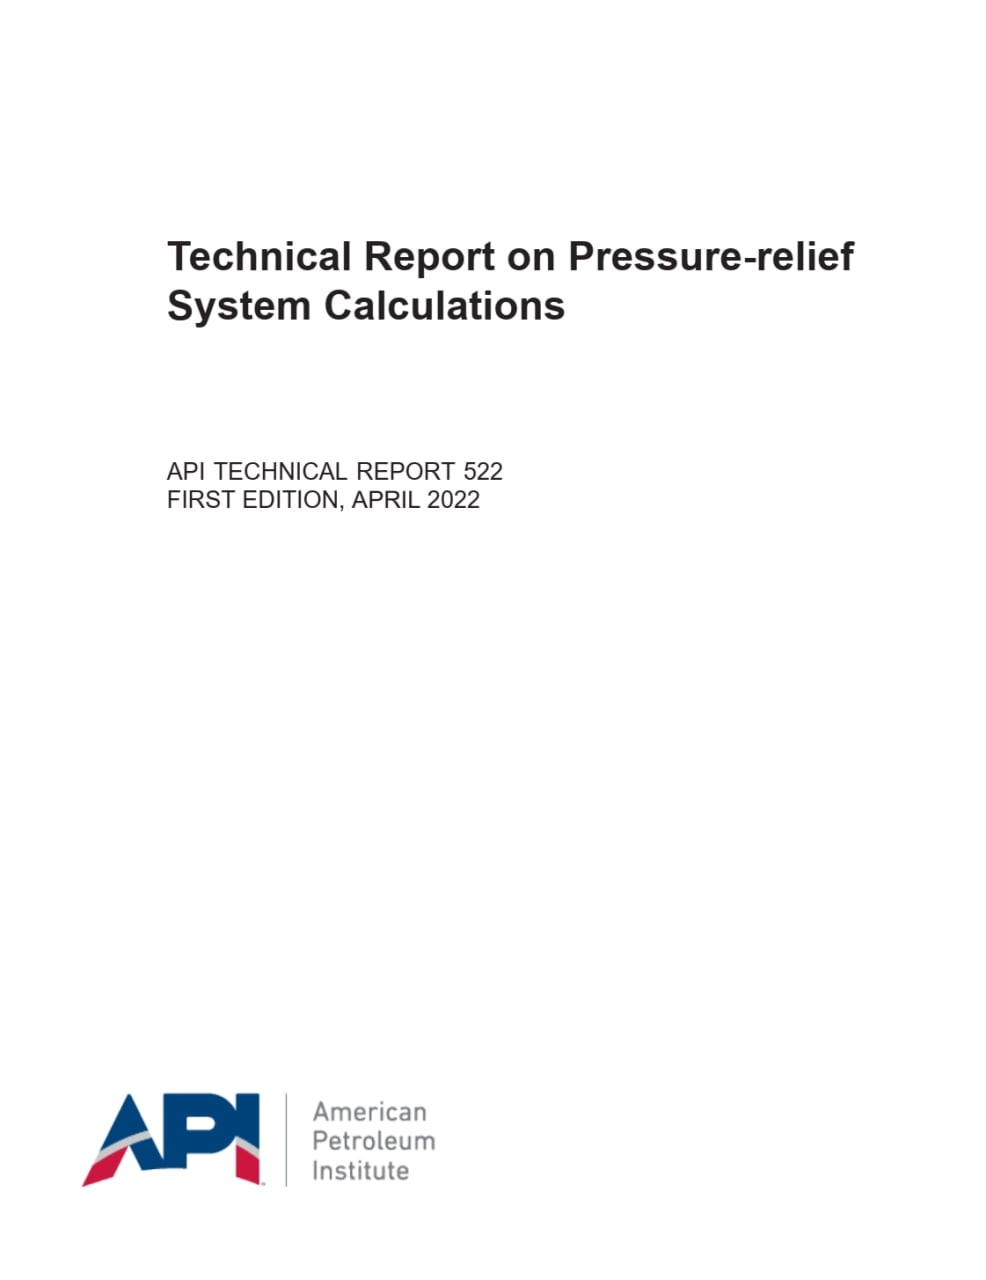 اولین ویرایش استاندارد API 522 در زمینه محاسبات شیرهای اطمینان  💥API 522 2022  ✅Technical Report on Pressure-relief System Calculations